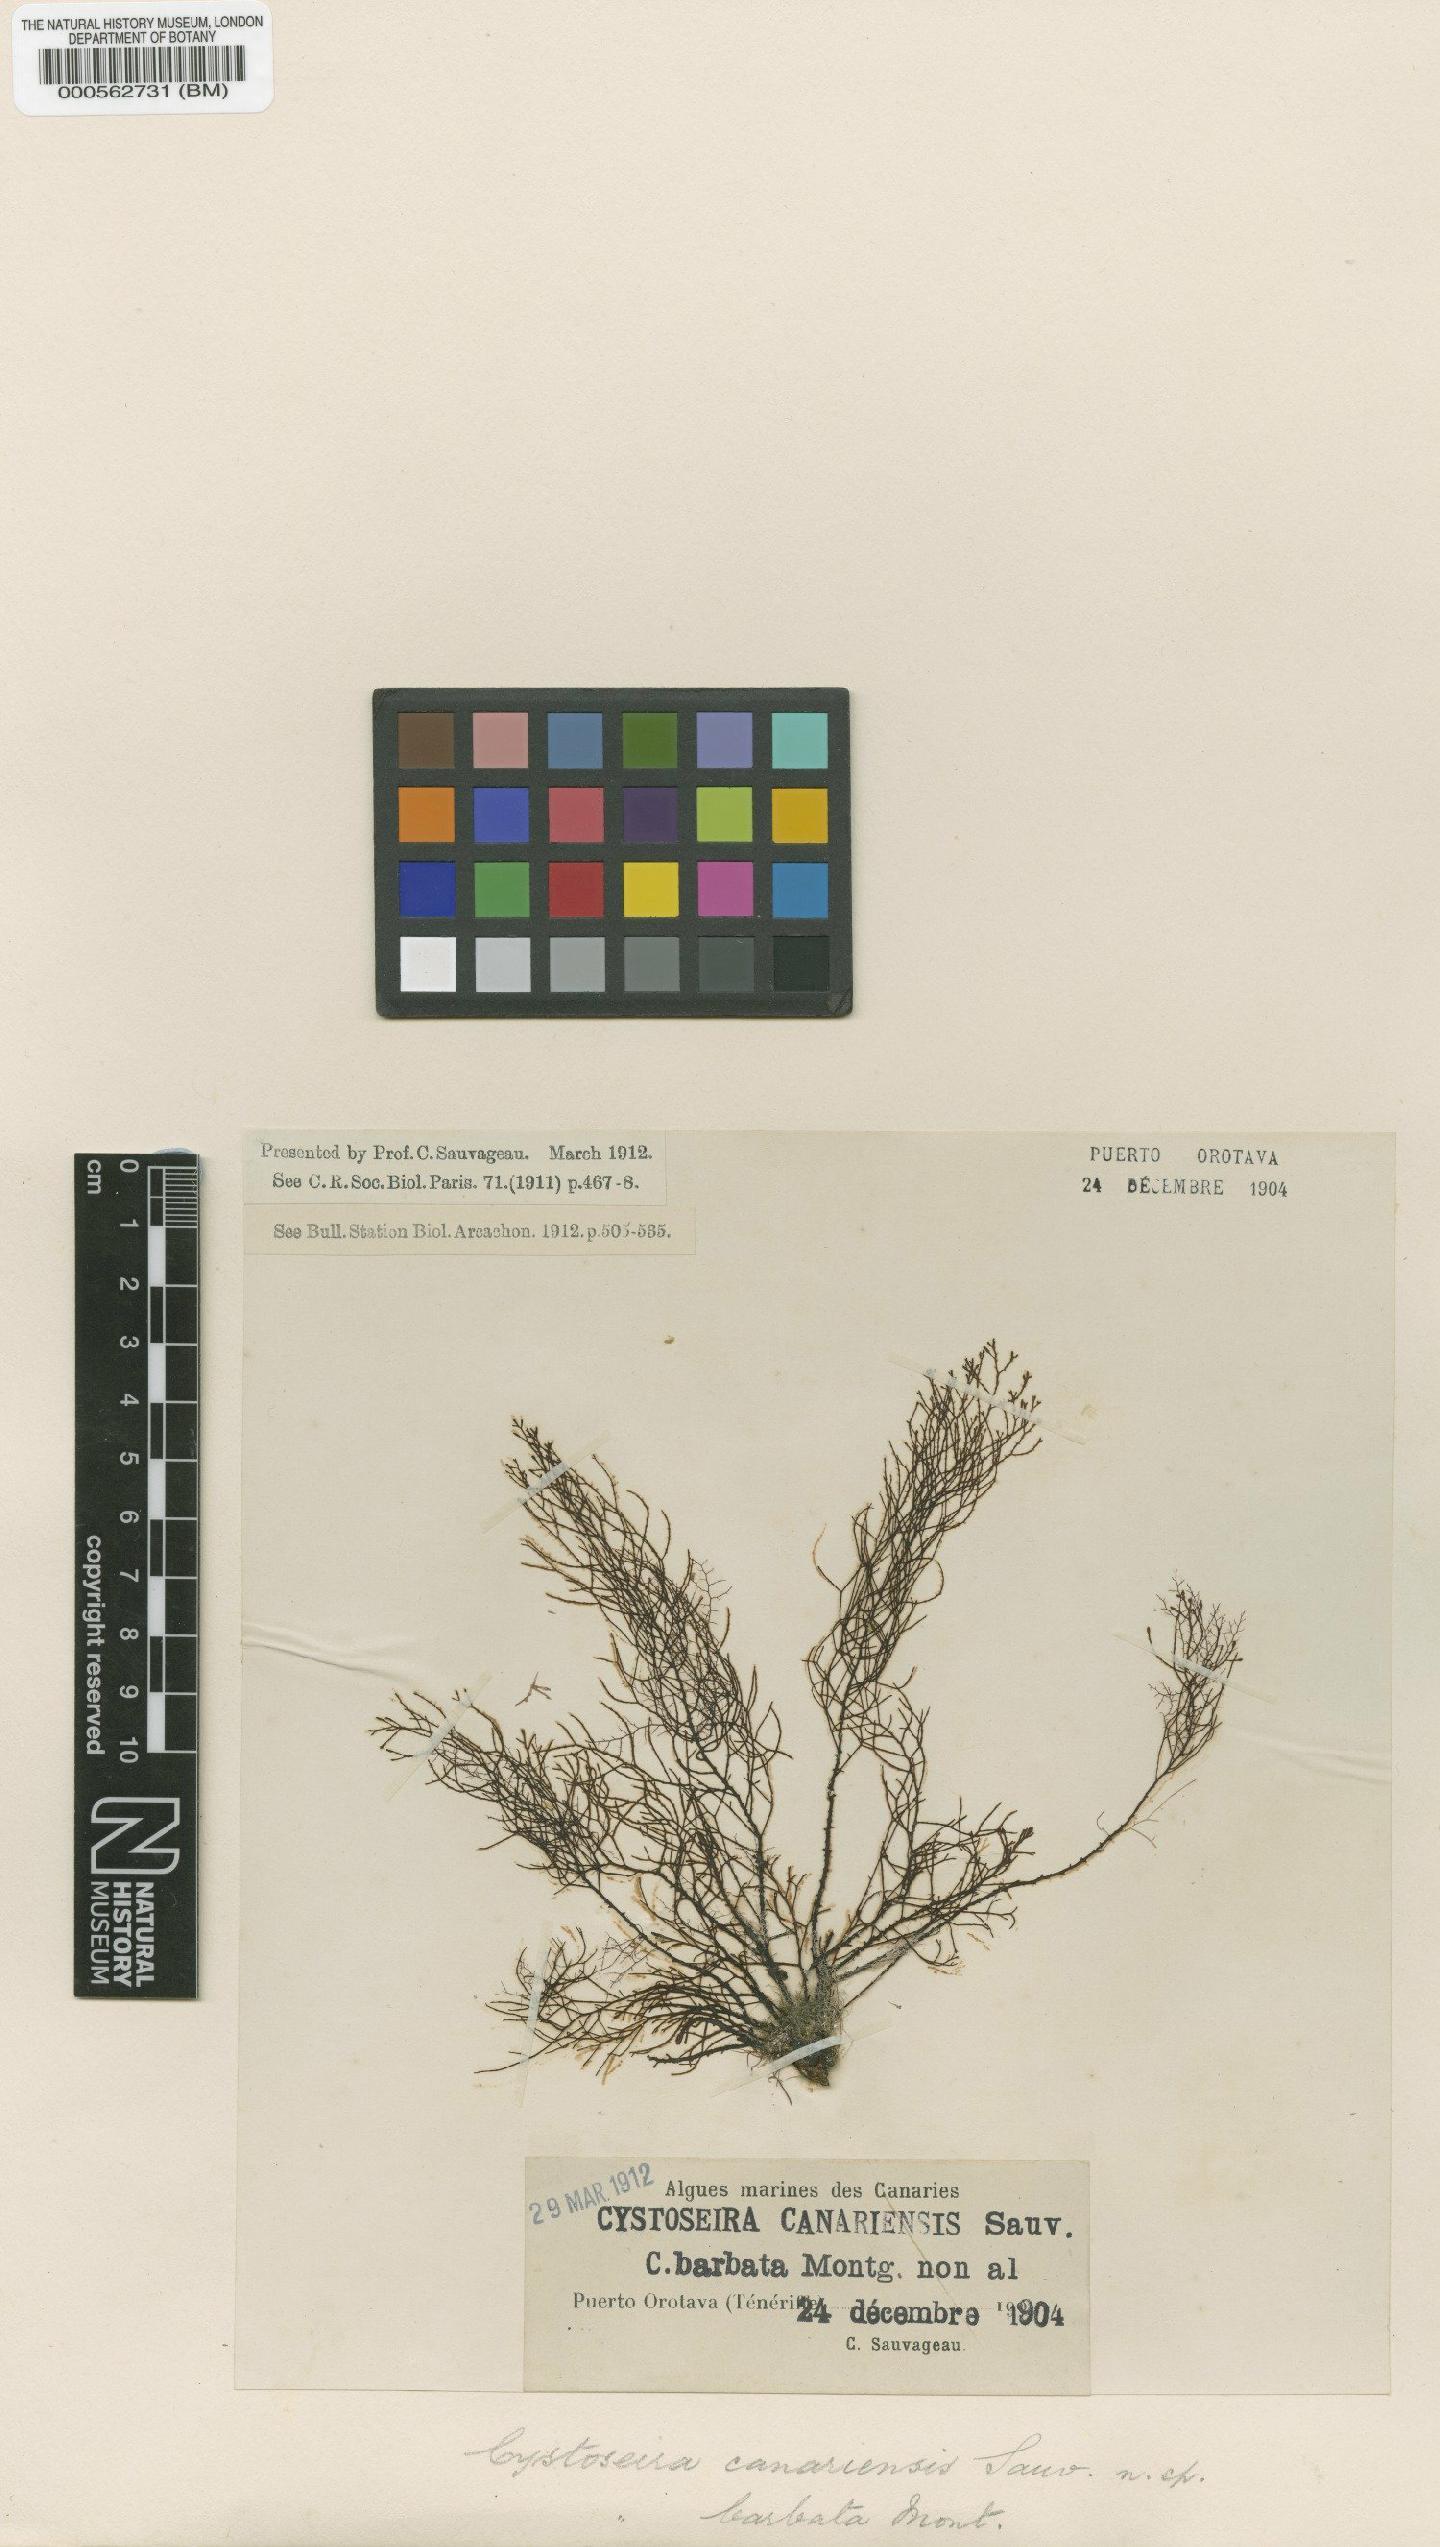 To NHMUK collection (Cystoseira canariensis Sauv.; Syntype; NHMUK:ecatalogue:4721974)